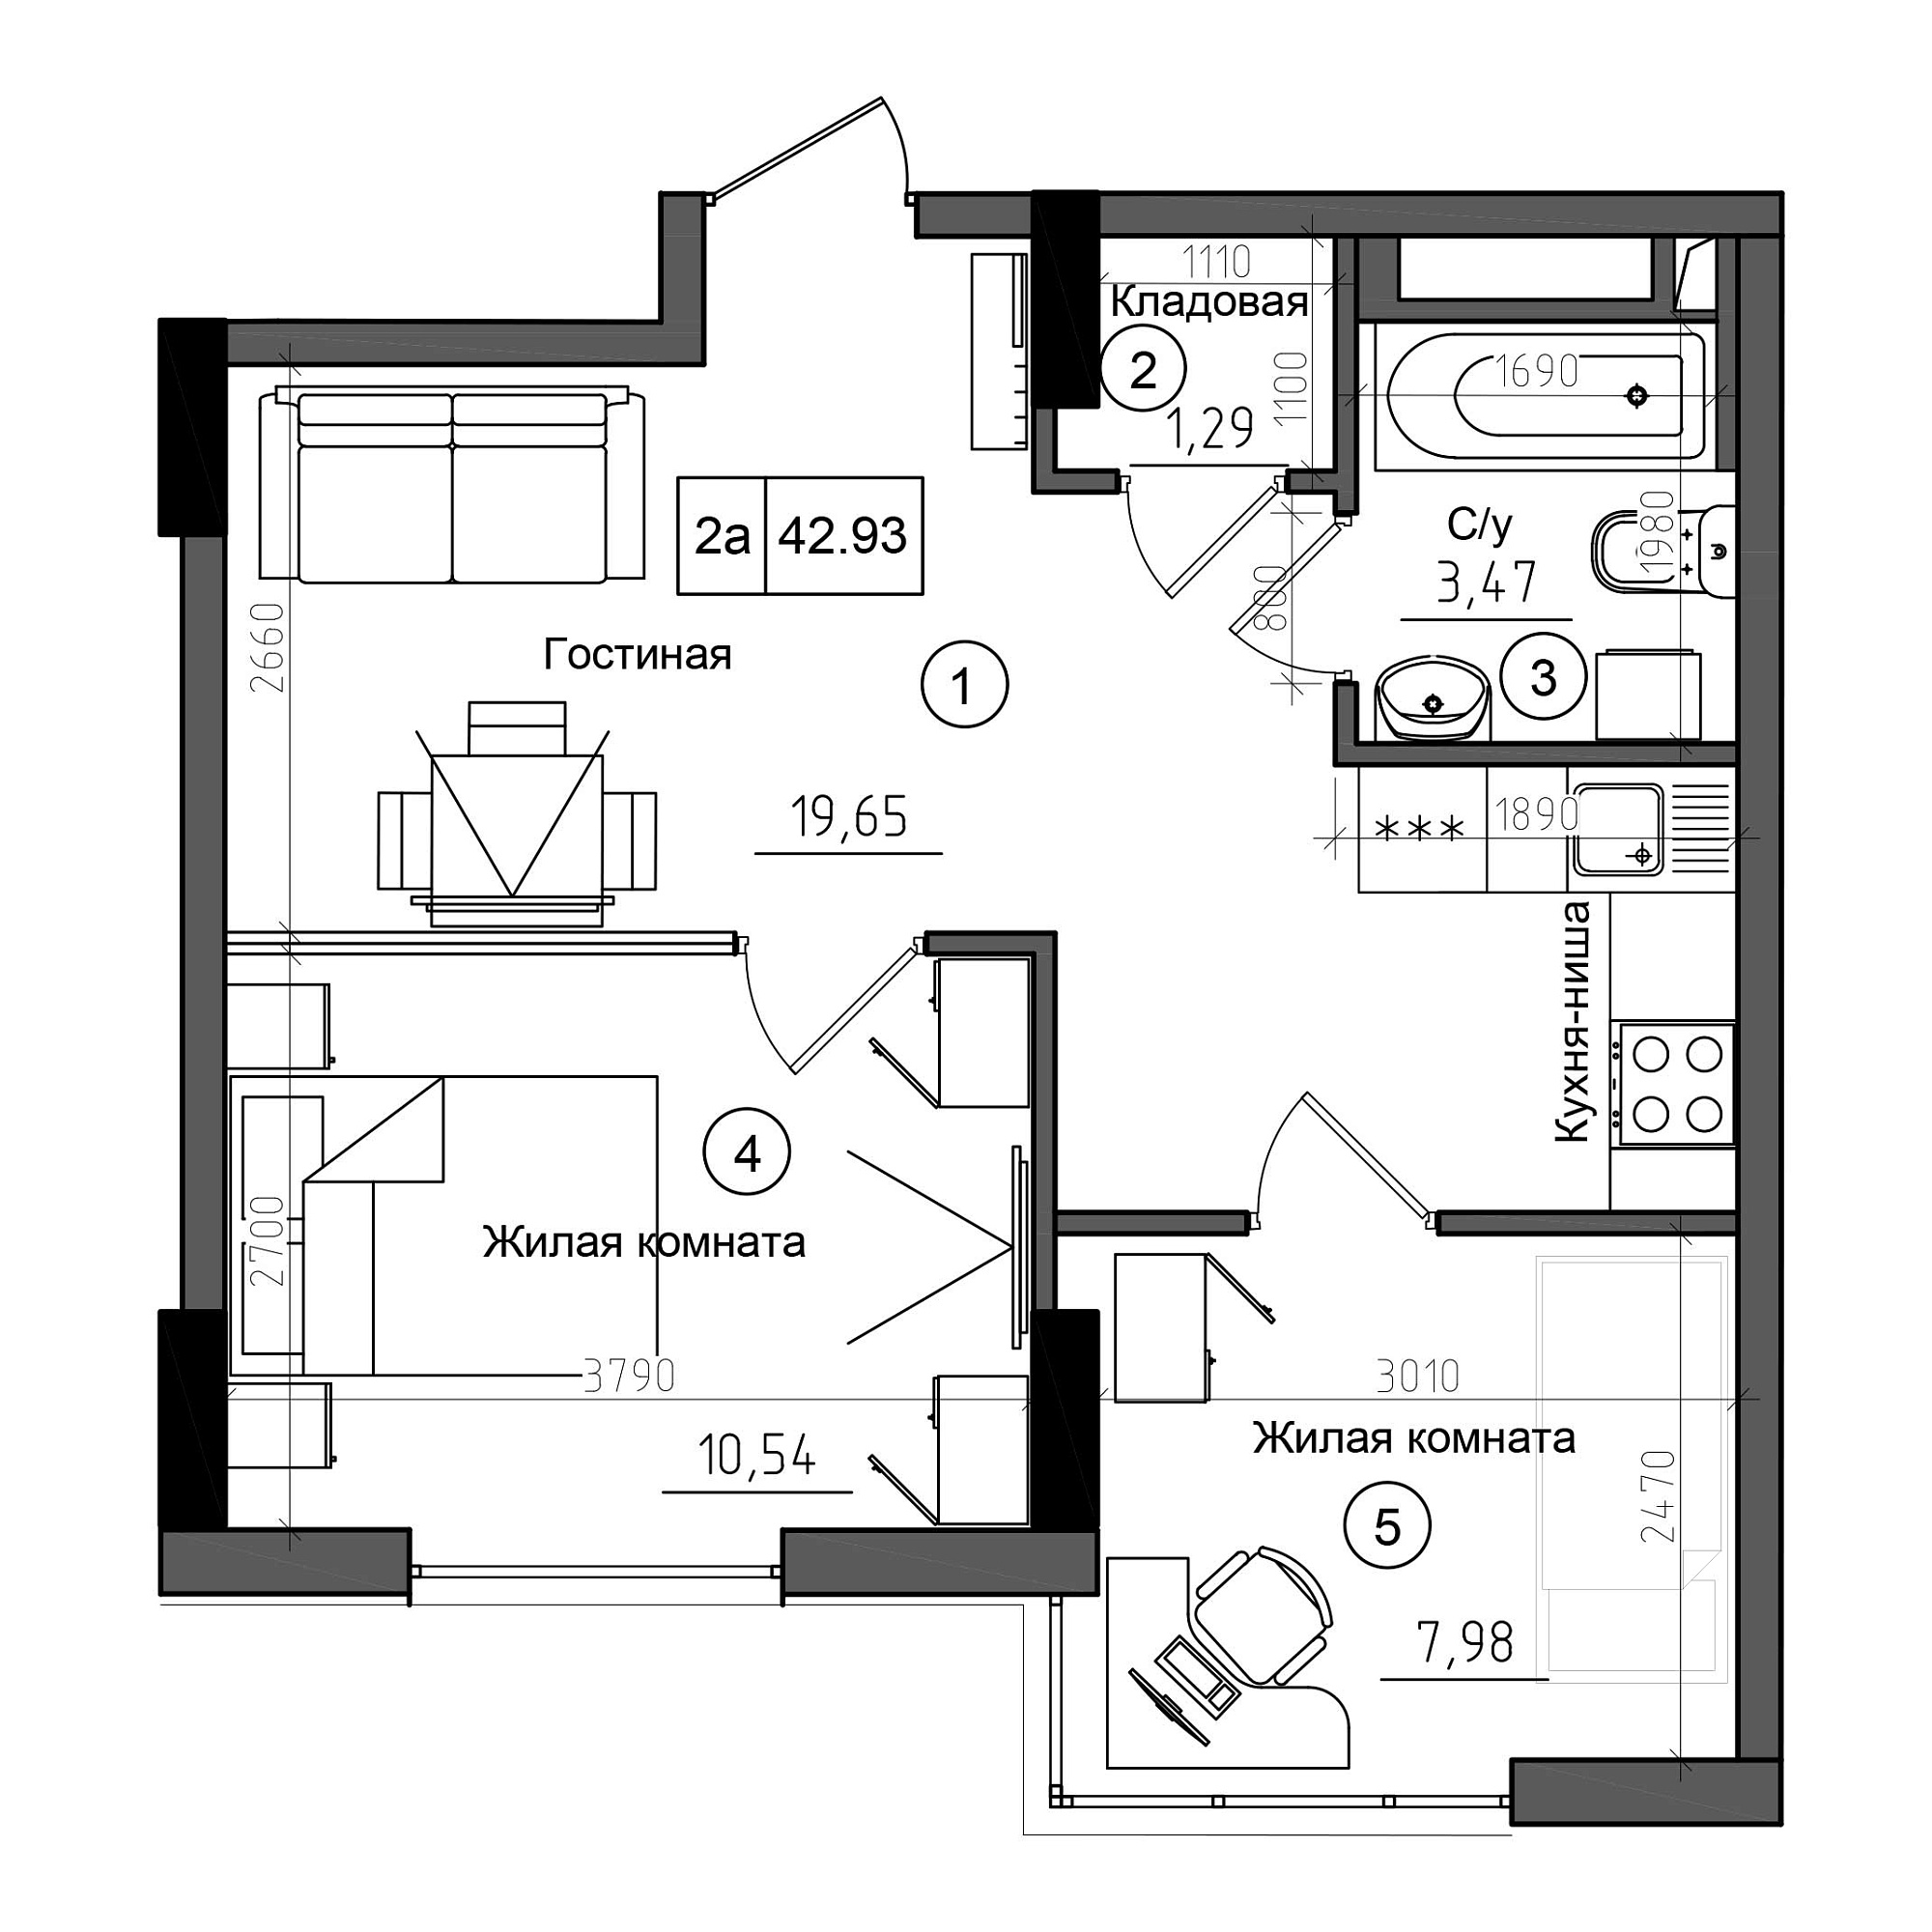 Планування 2-к квартира площею 42.93м2, AB-21-01/00003.